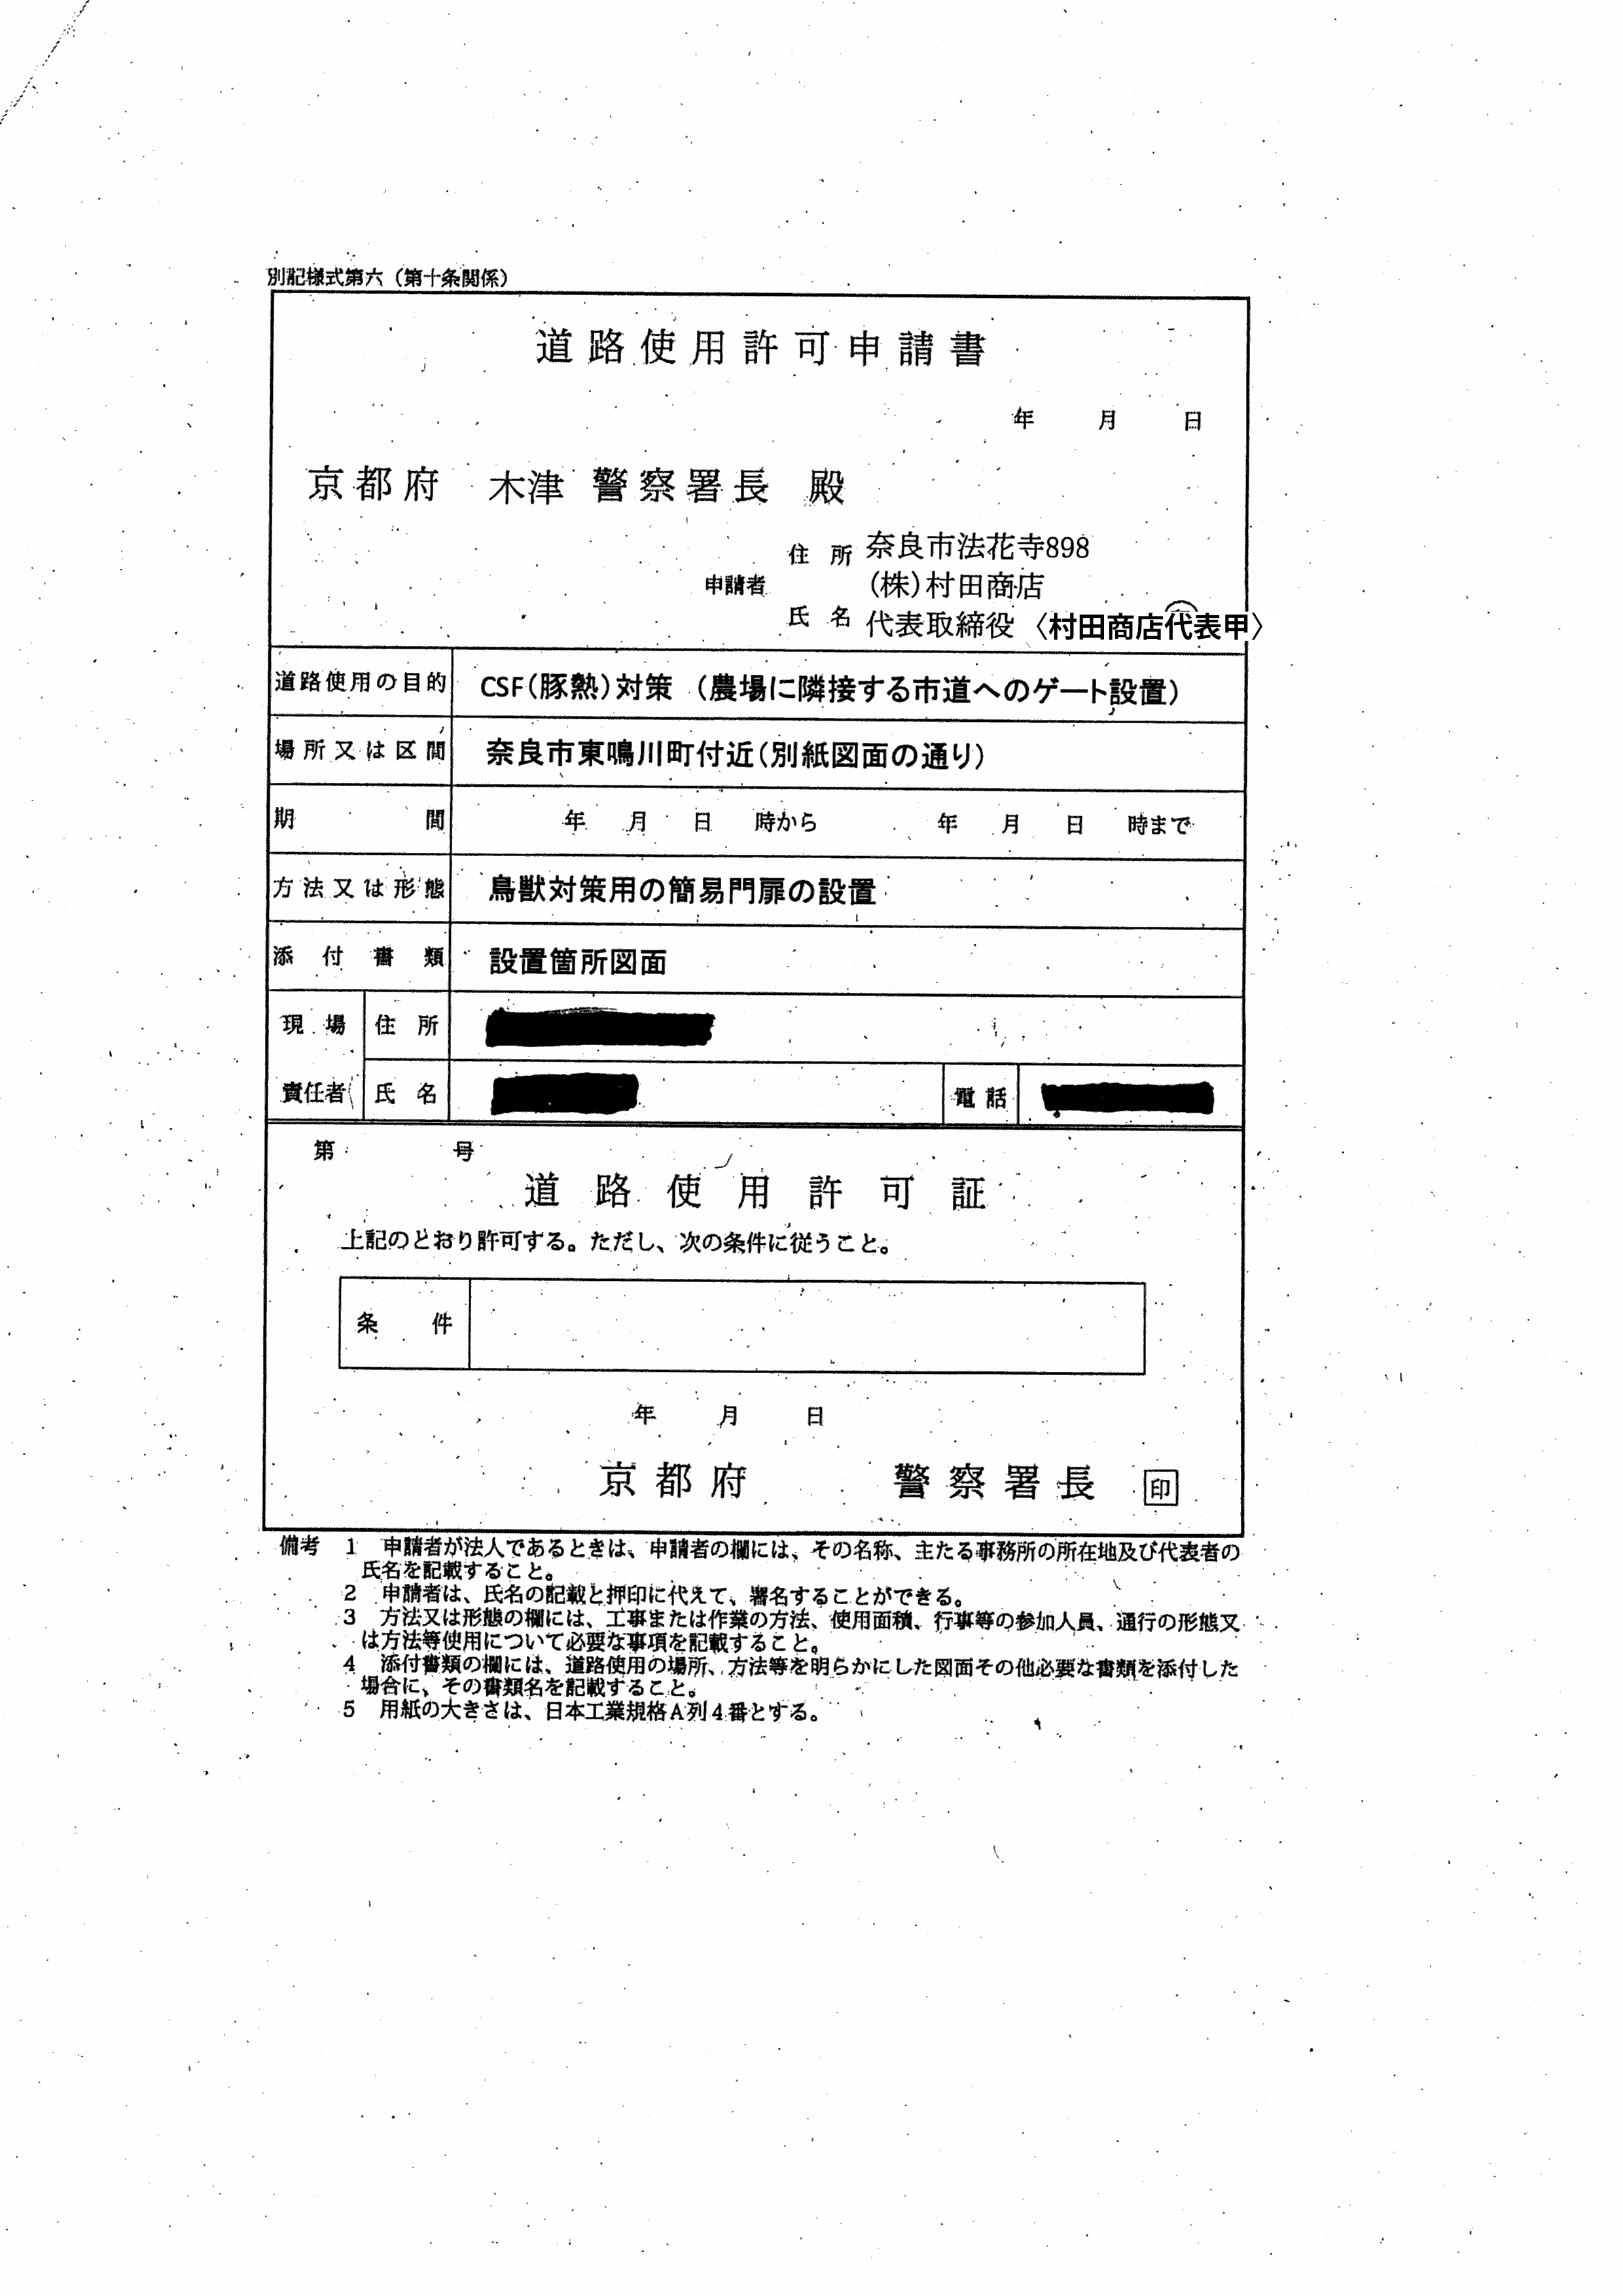 令和2年4月14日-村田養豚場の防護柵に係る奈良県との協議に関する報告書-13-道路使用許可証